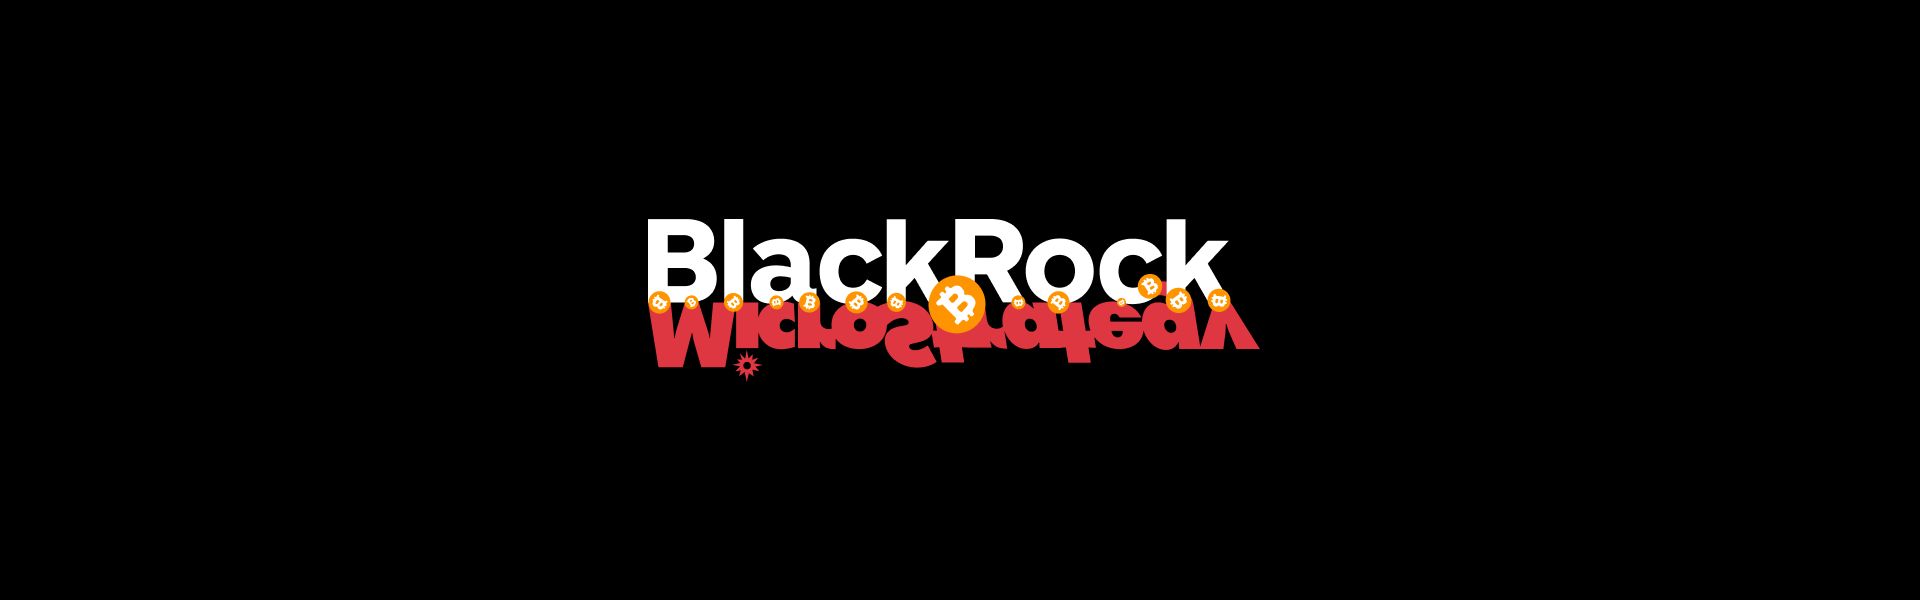 MicroStrategy та BlackRock: спільне та відмінності